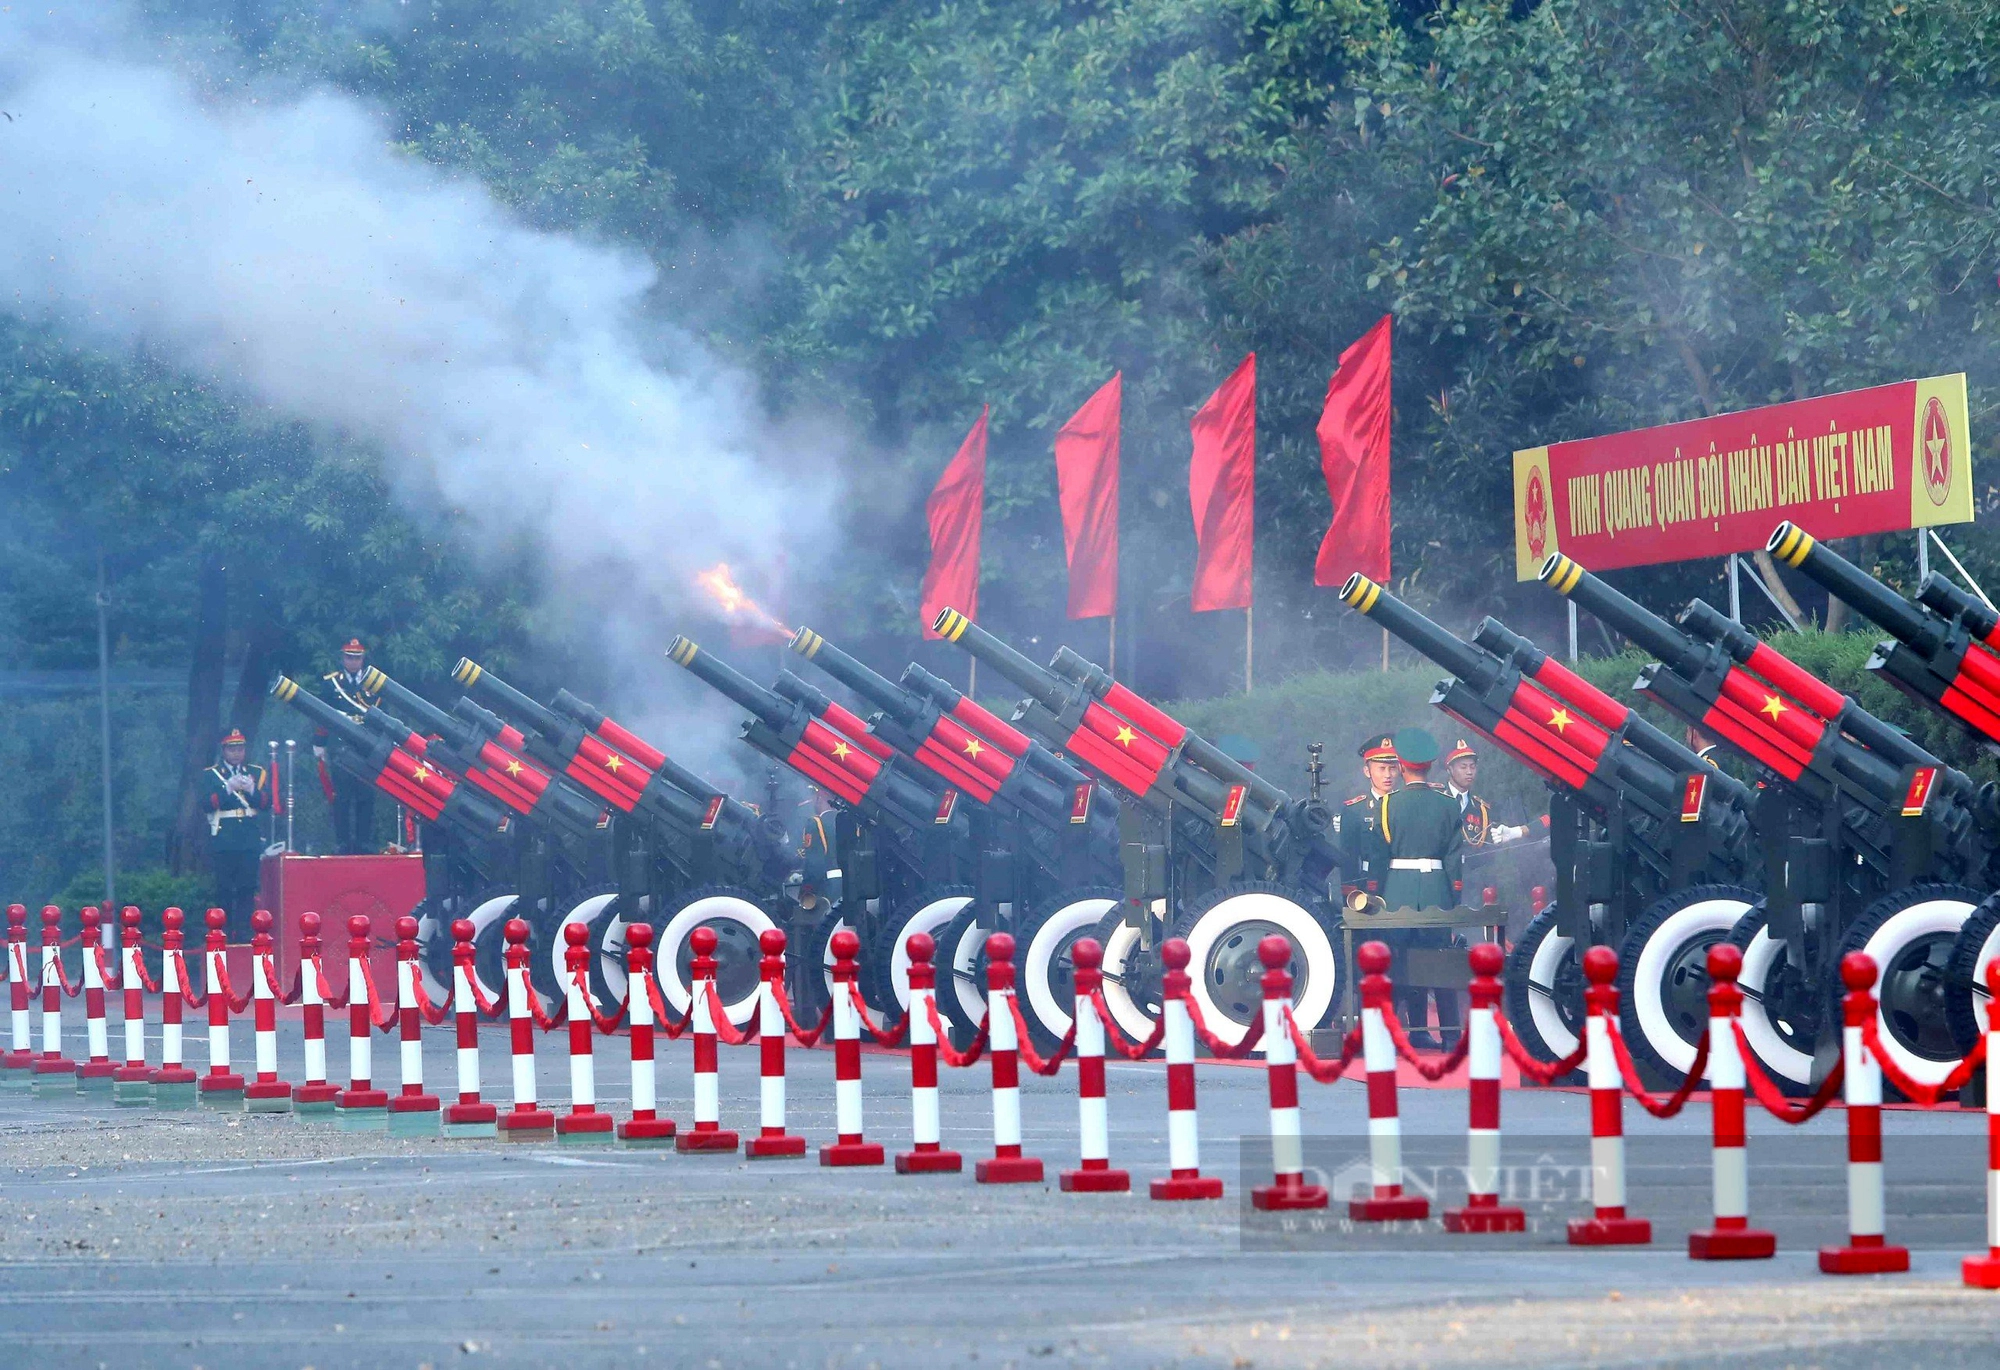 Bắn 21 phát đại bác chào mừng Tổng Bí thư, Chủ tịch Trung Quốc Tập Cận Bình thăm Việt Nam - Ảnh 2.